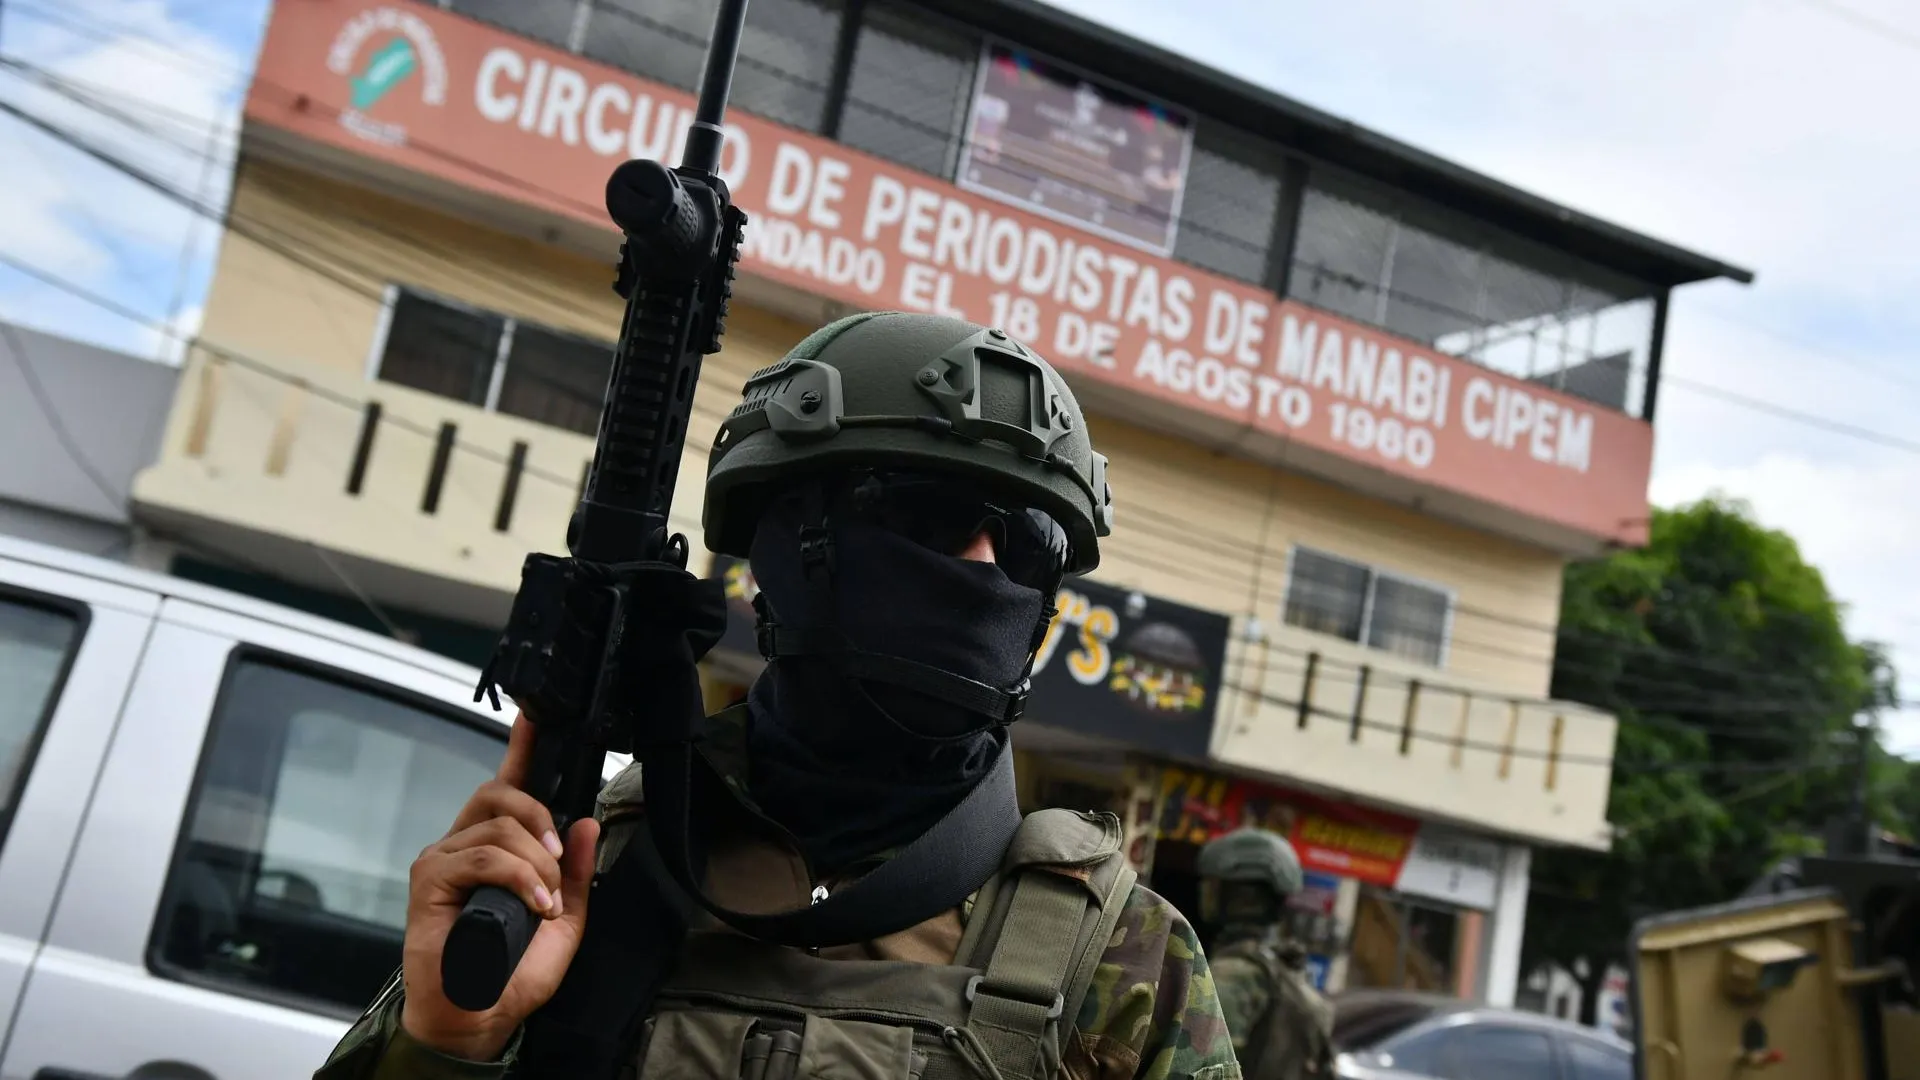 Военные на улицах города Гуаякиля — эпицентра конфликта. Фото: Ariel Ochoa